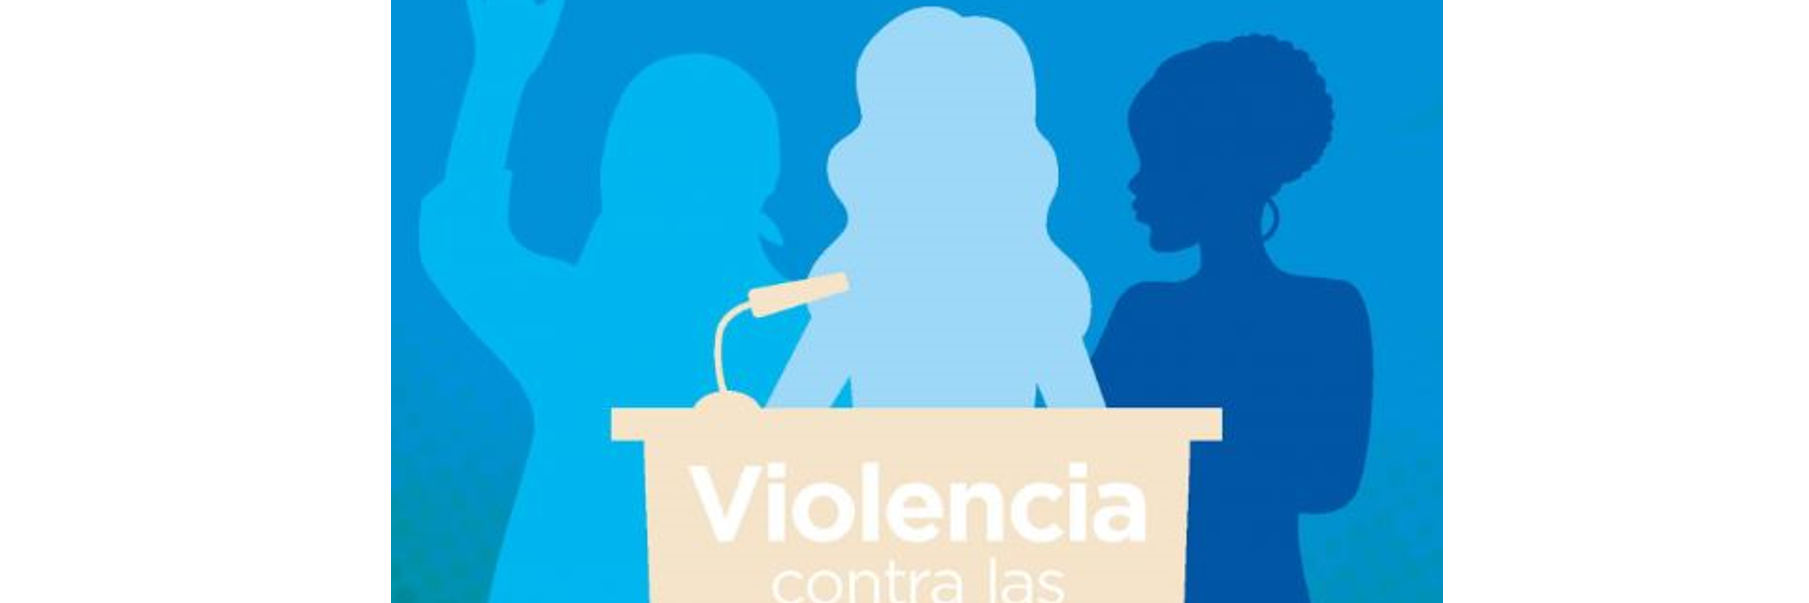 VIOLENCIA CONTRA LAS MUJERES EN LA POLÍTICA.